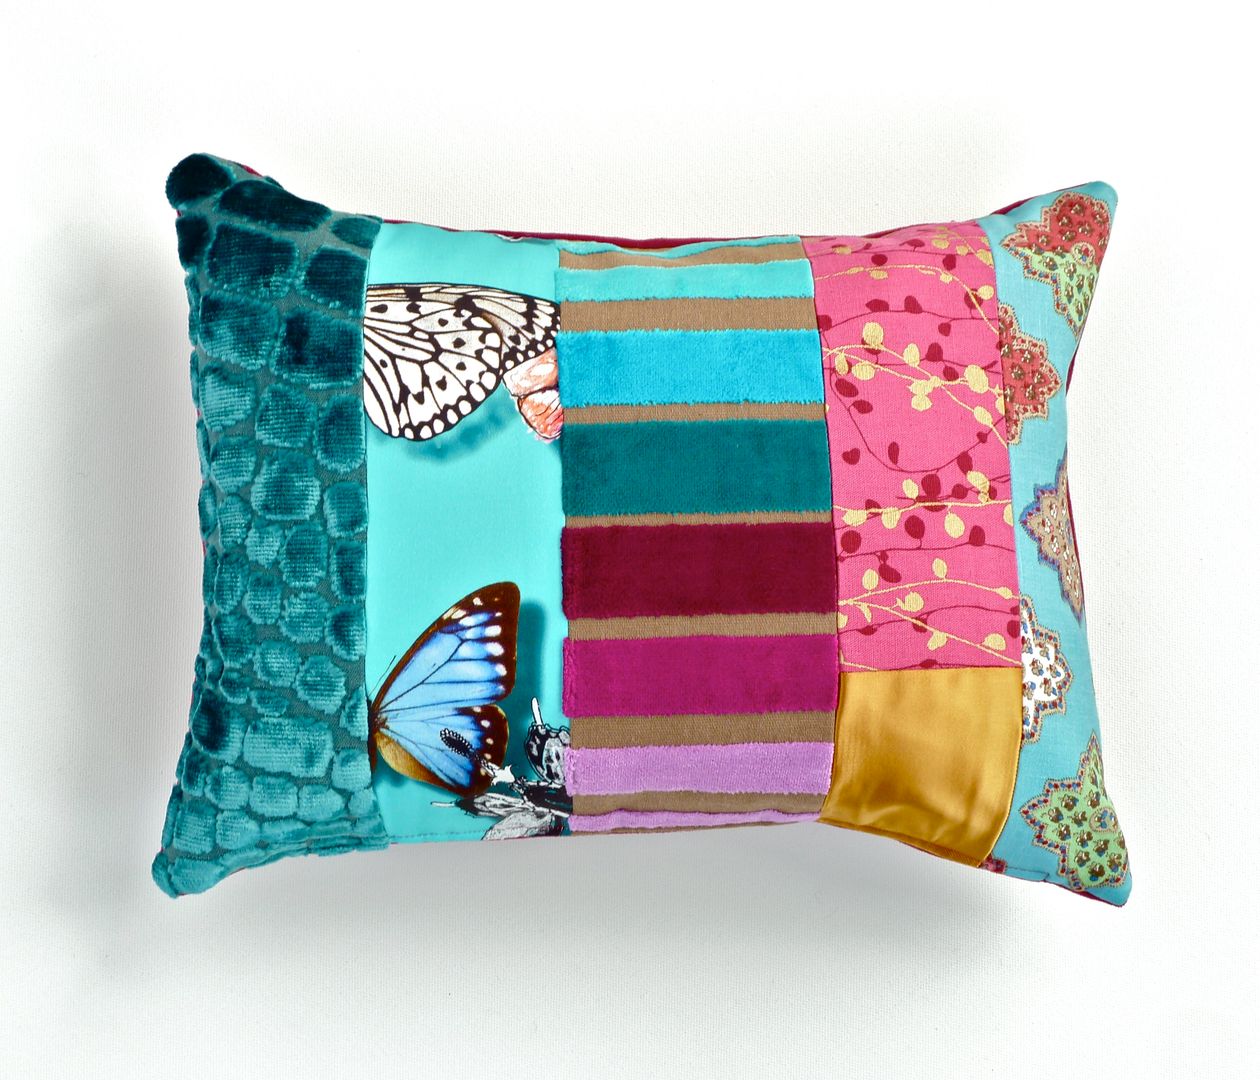 Rocco luxury patchwork cushion Suzy Newton Ltd. Salones eclécticos Accesorios y decoración